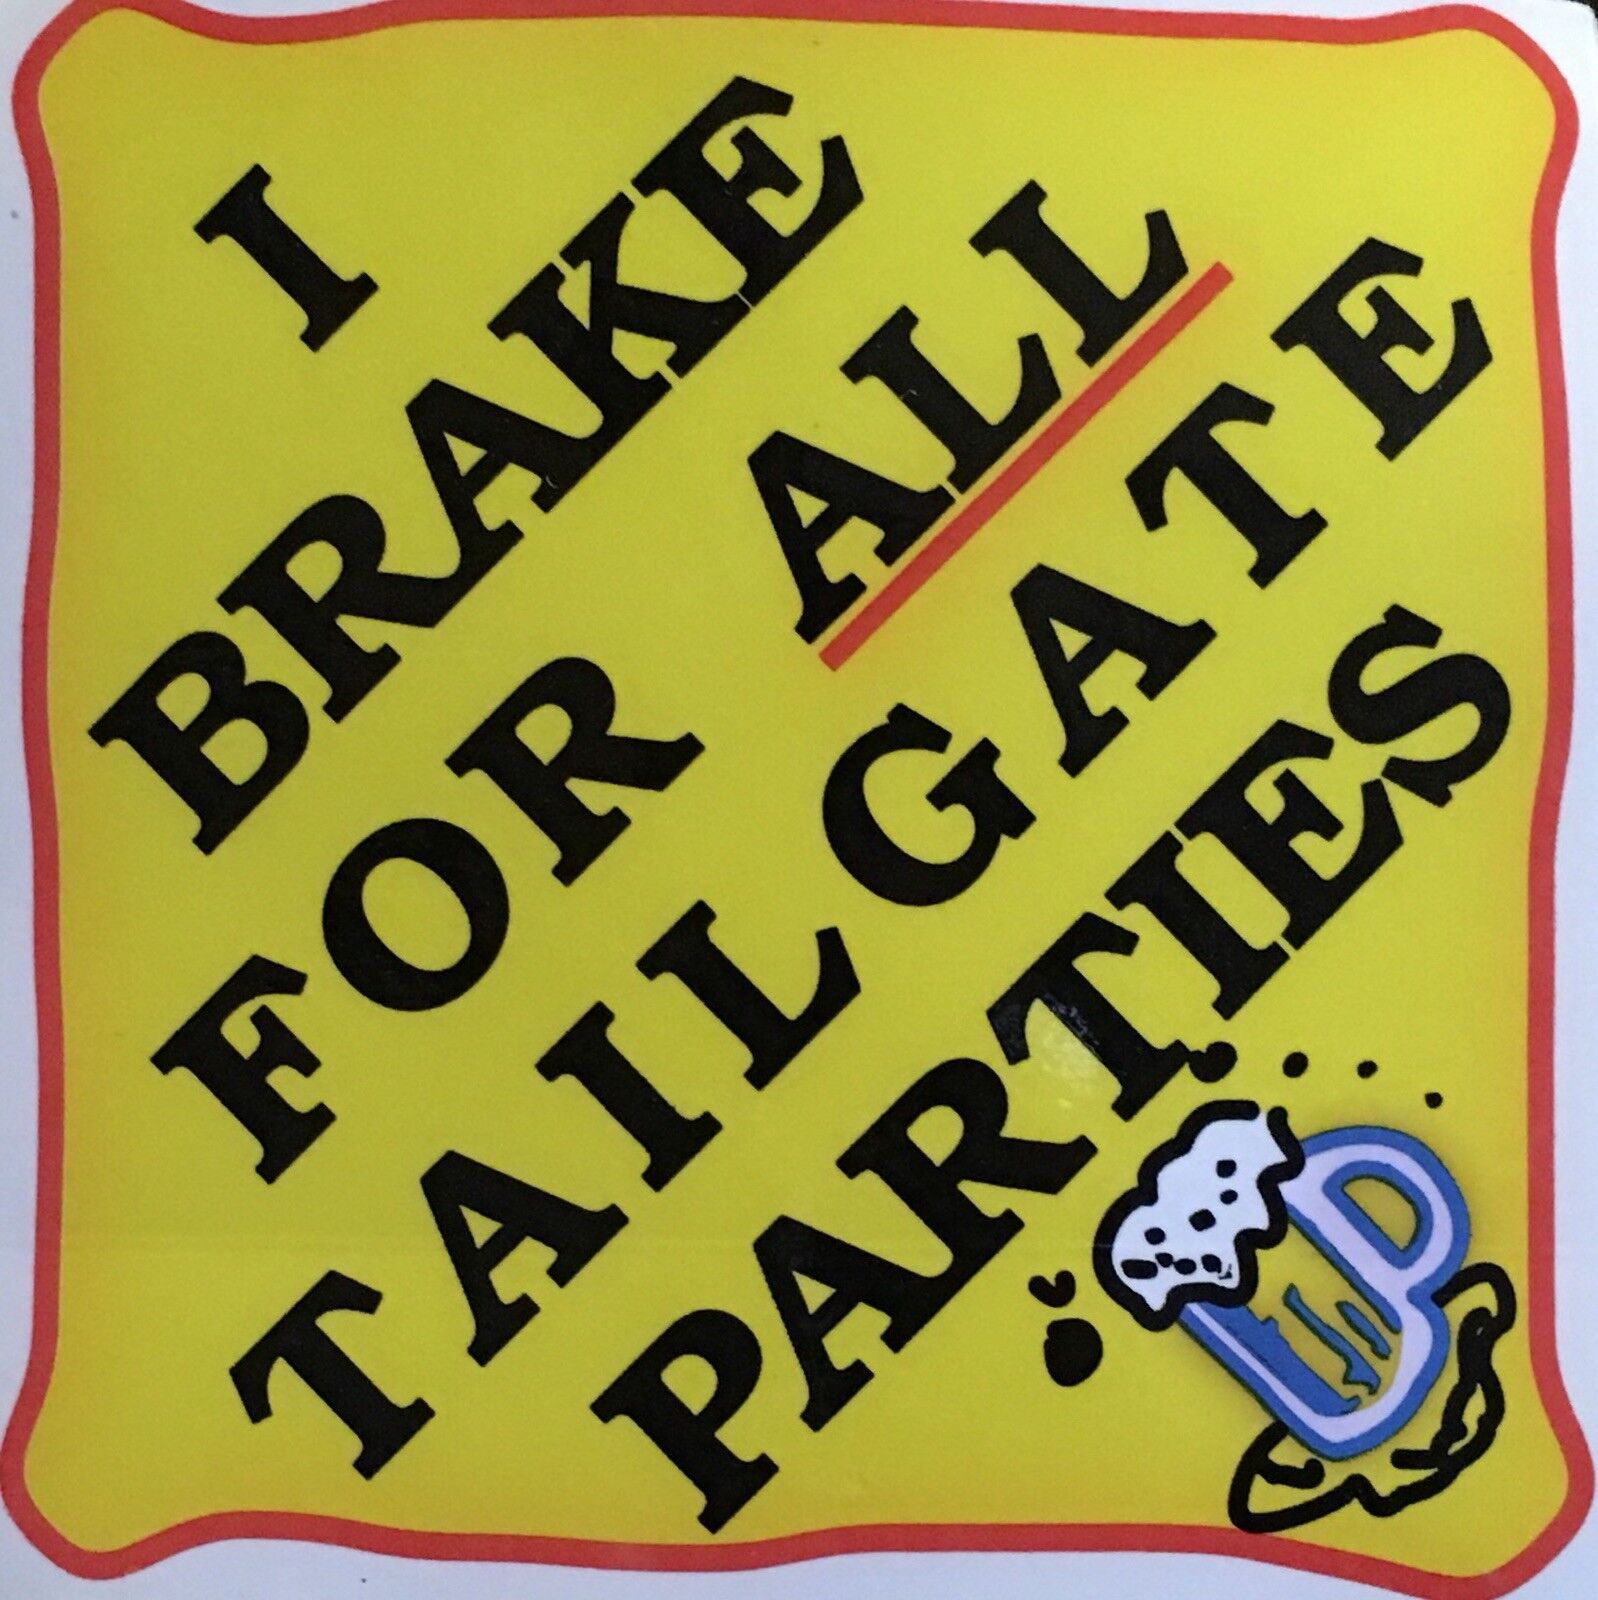 “I Brake For All Tailgate Parties” vinyl sticker